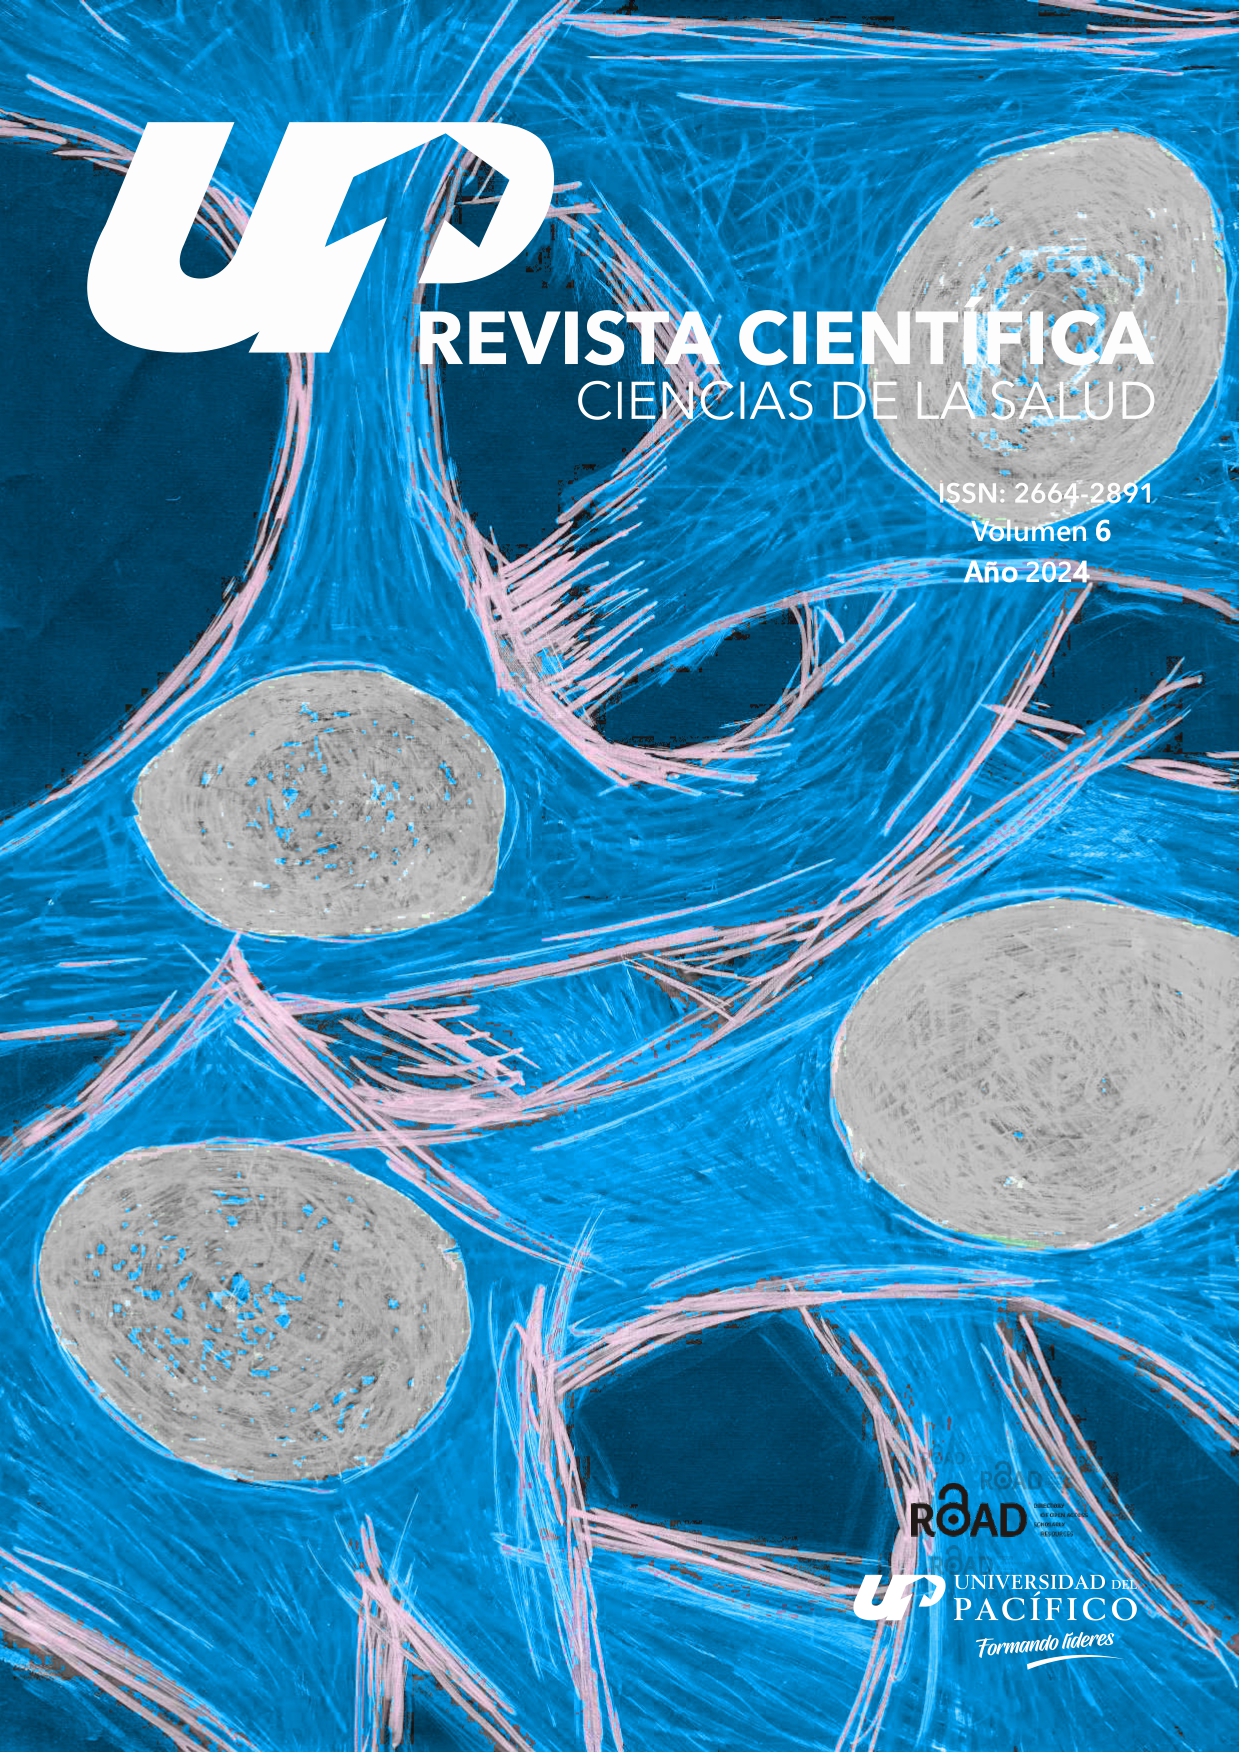 					View Vol. 6 (2024): Revista científica ciencias de la salud - ISSN: 2664-2891
				